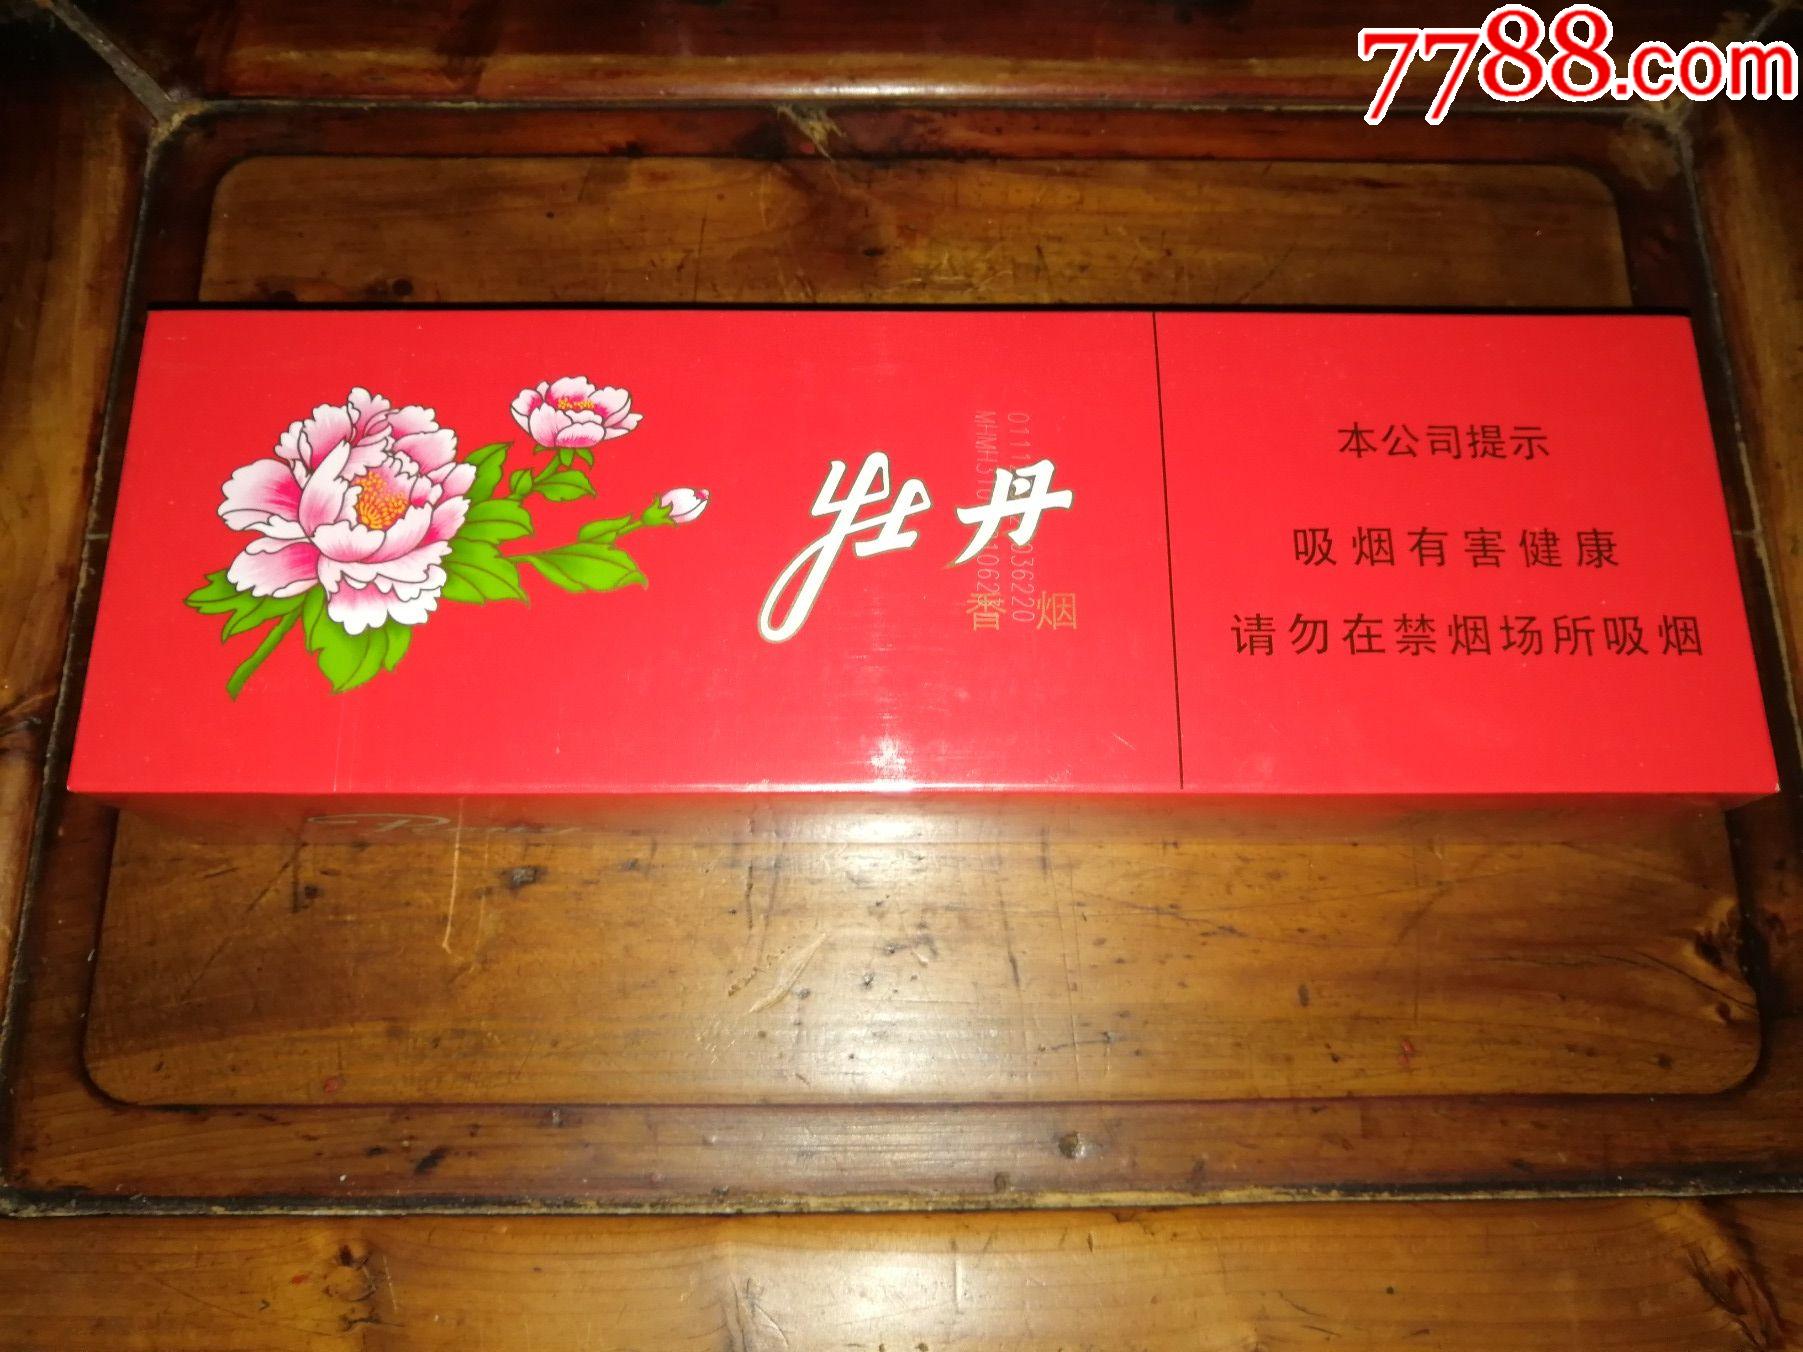 (希缺产品收藏)上海牡丹香烟(红牡丹软包333整条)最后一件便宜出包邮